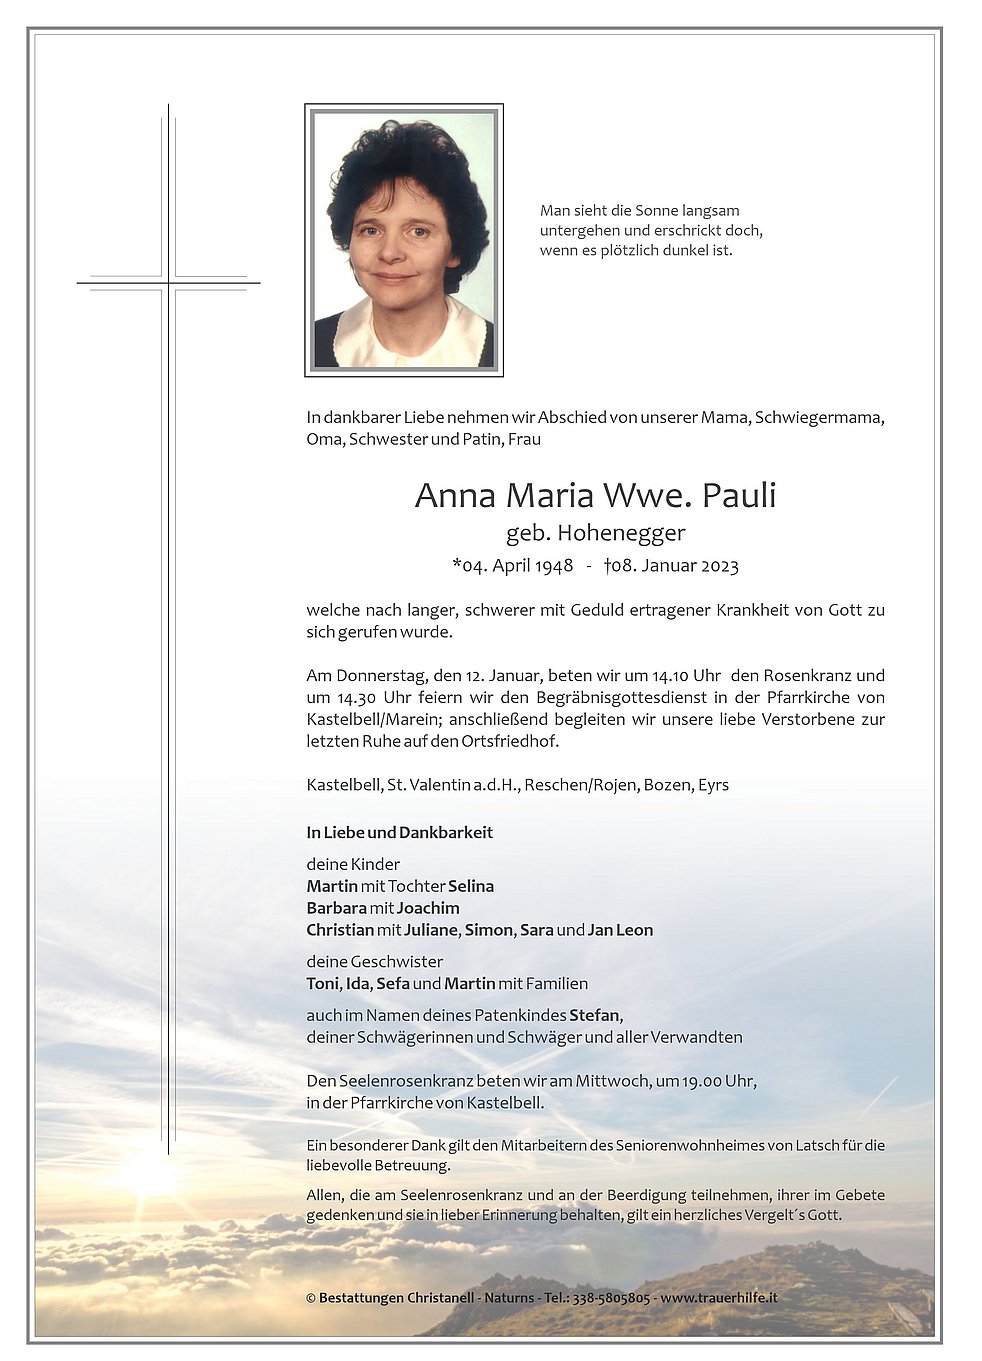 Anna Maria Wwe Pauli Aus Kastelbell Tschars Trauerhilfeit Das Südtiroler Gedenkportal 